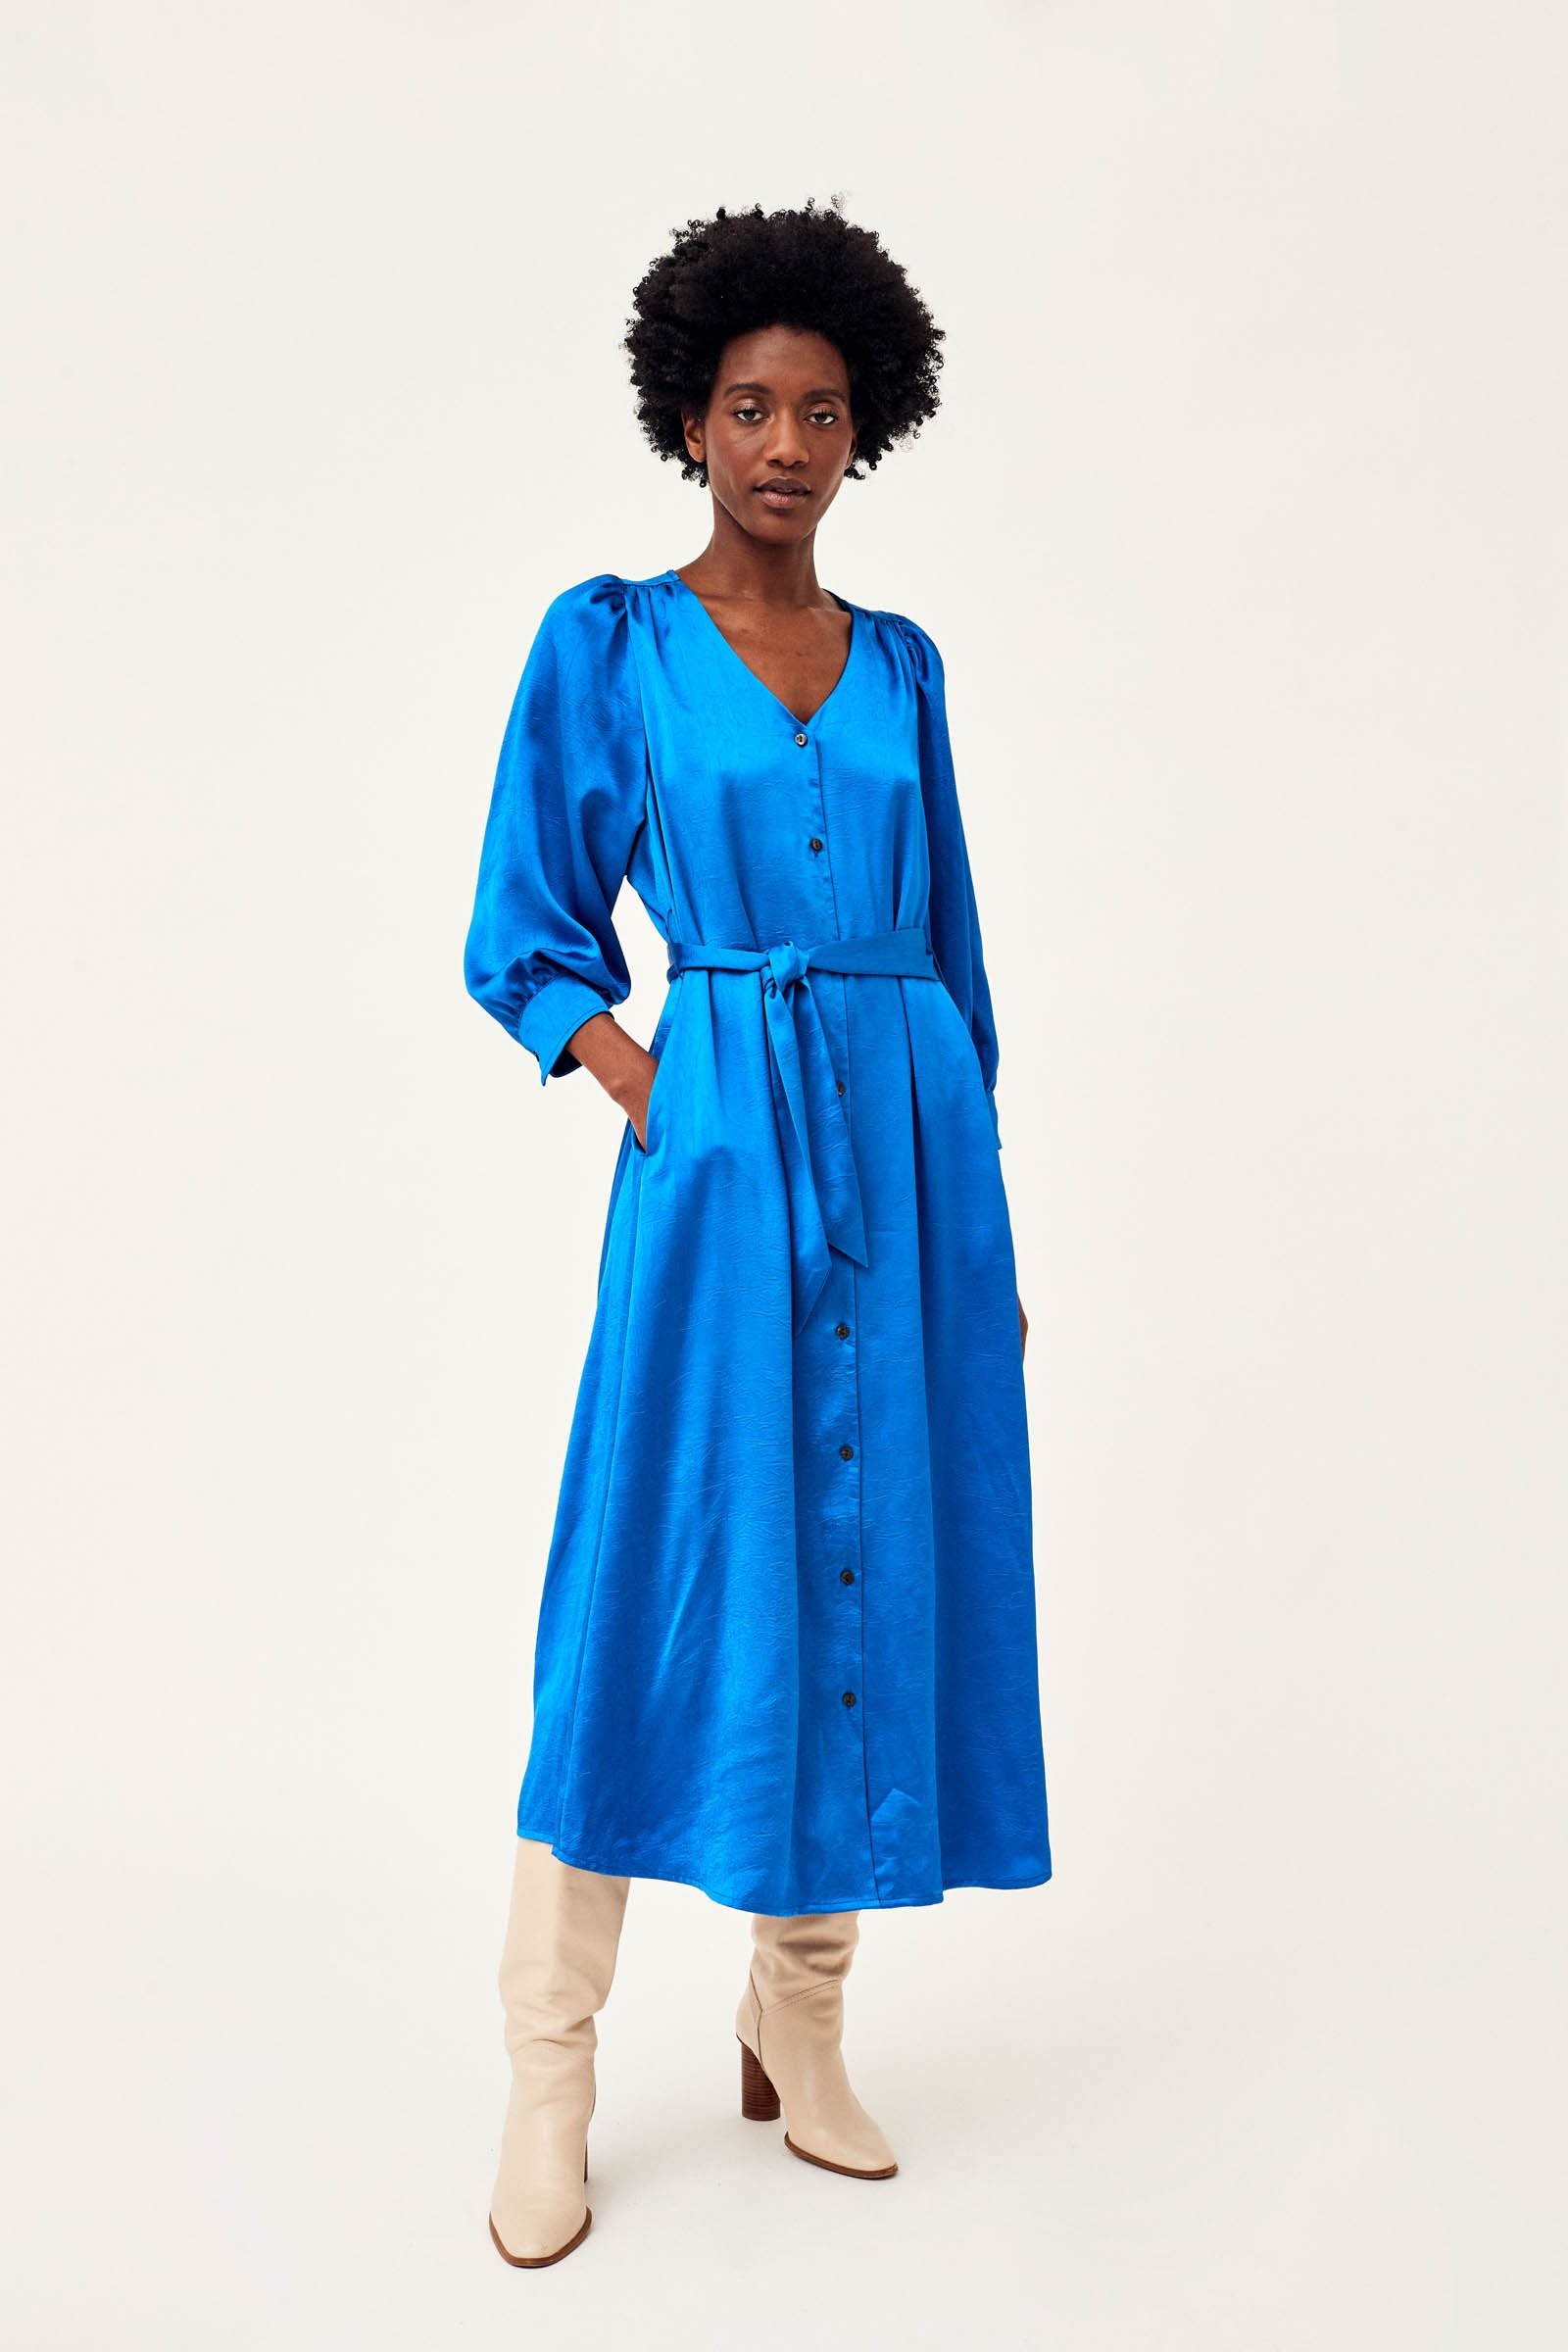 MICKOS - lange jurk blauw | CKS Fashion